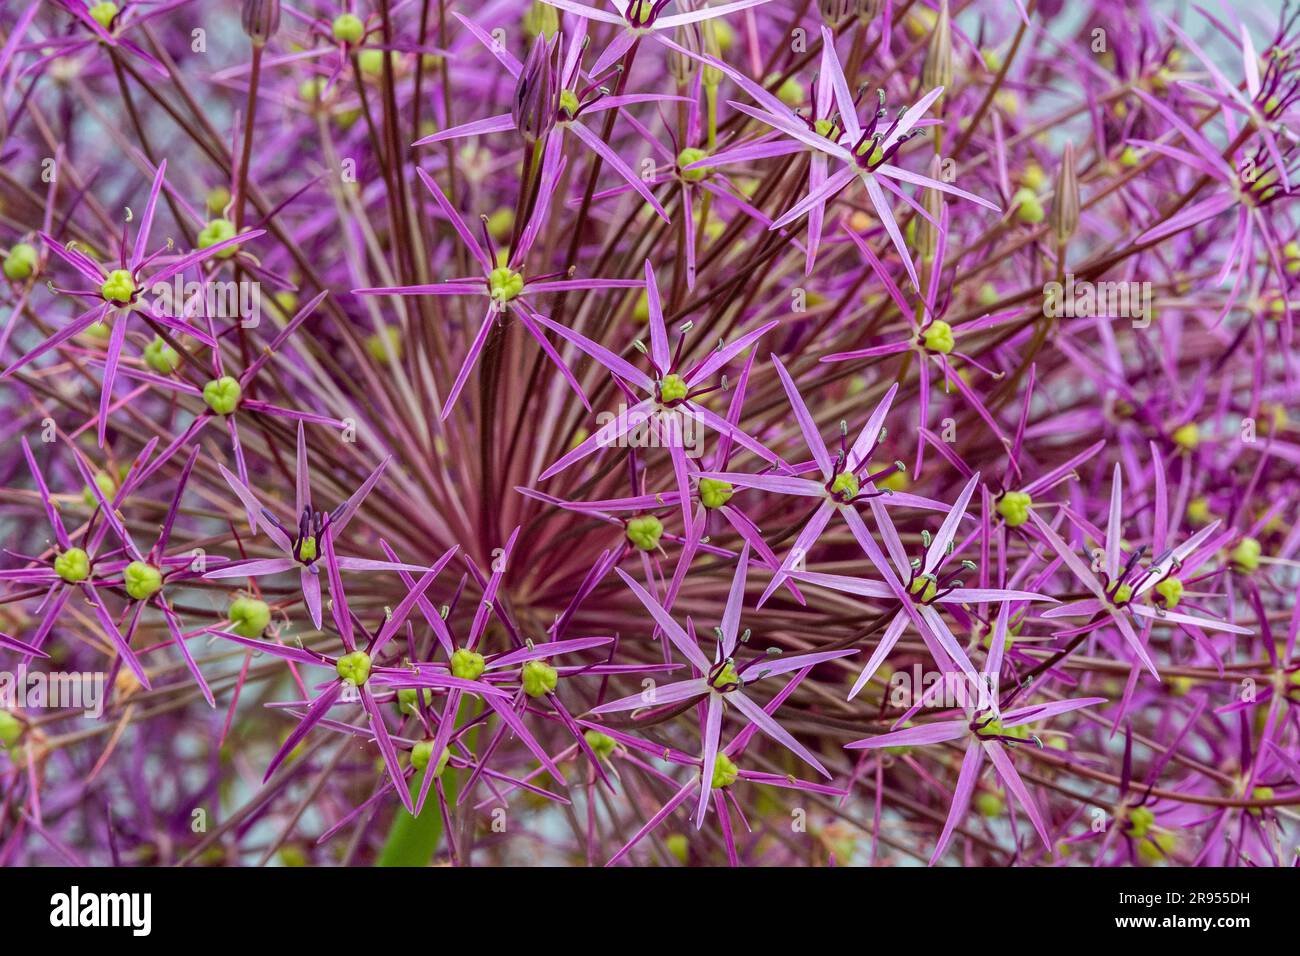 Allium cristophii, the Persian onion or star of Persia, in a domestic garden. Stock Photo